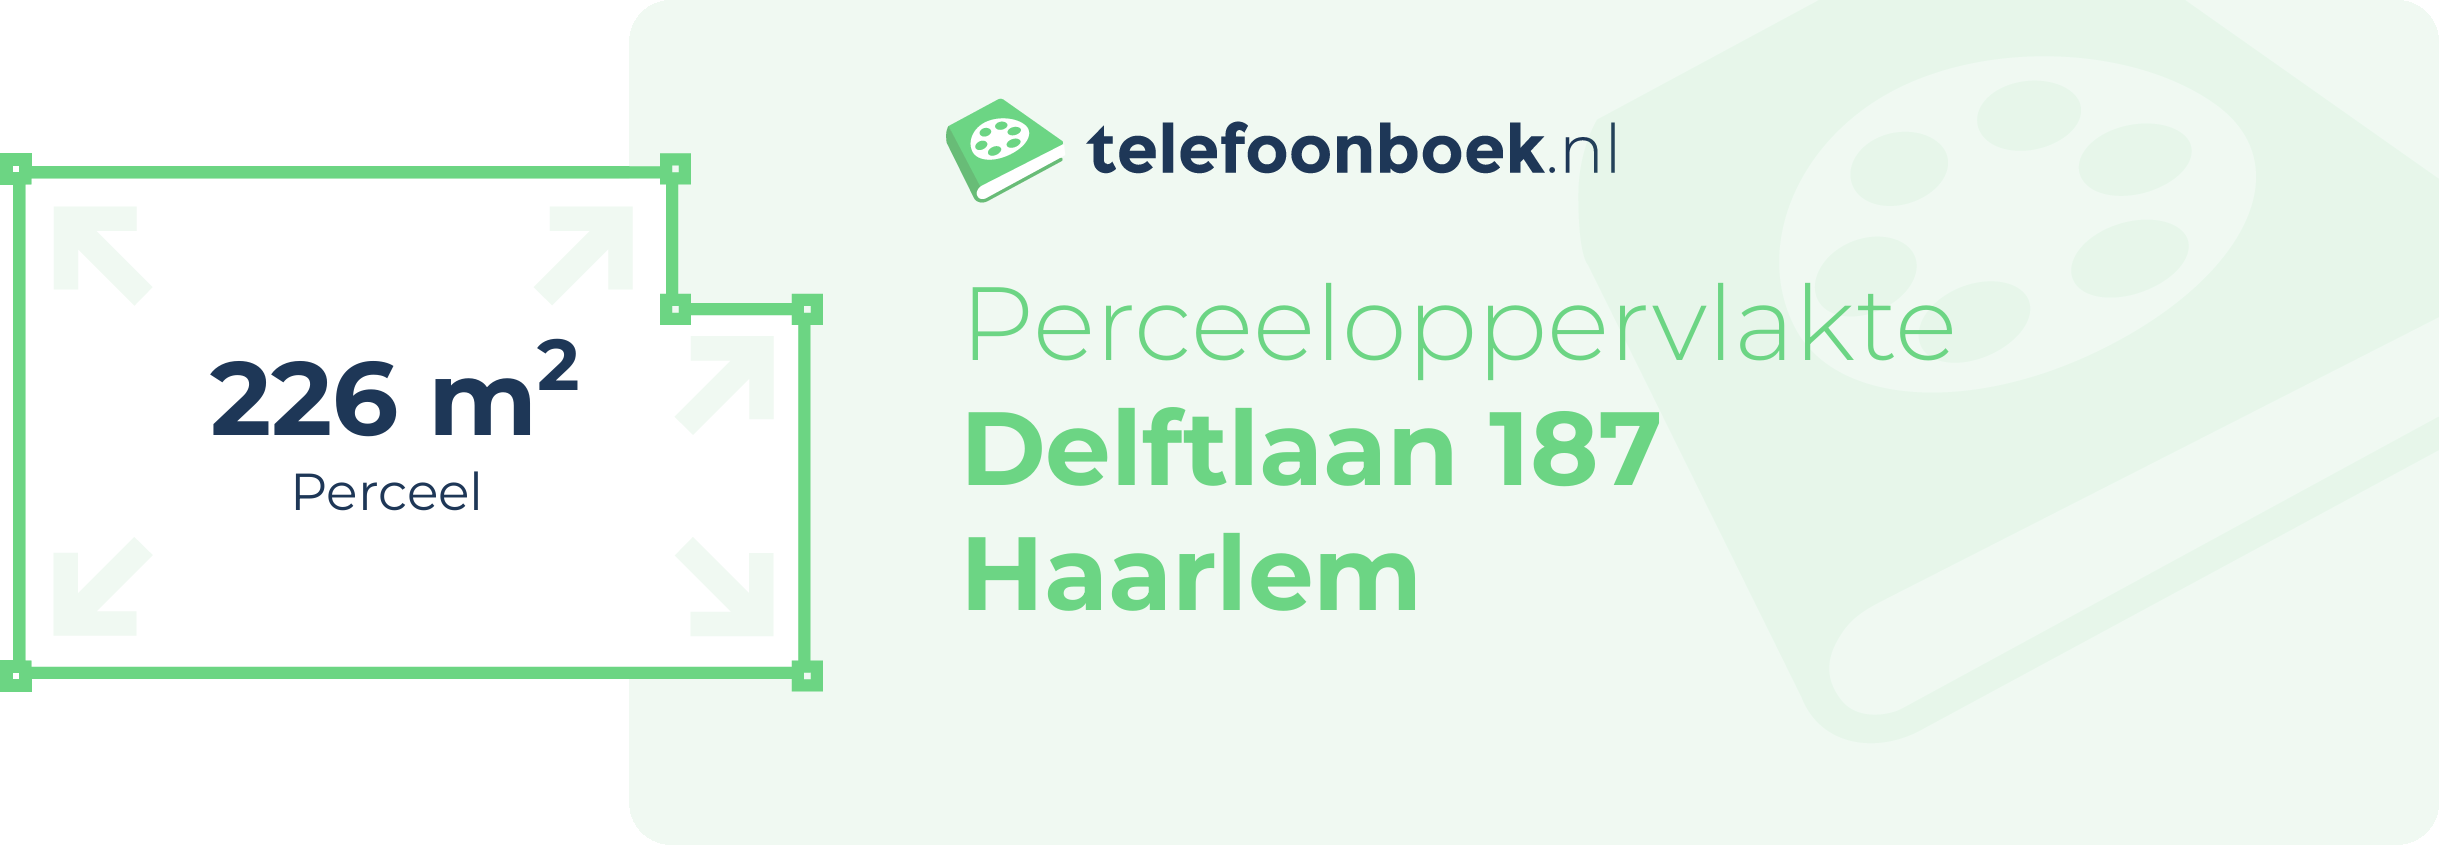 Perceeloppervlakte Delftlaan 187 Haarlem